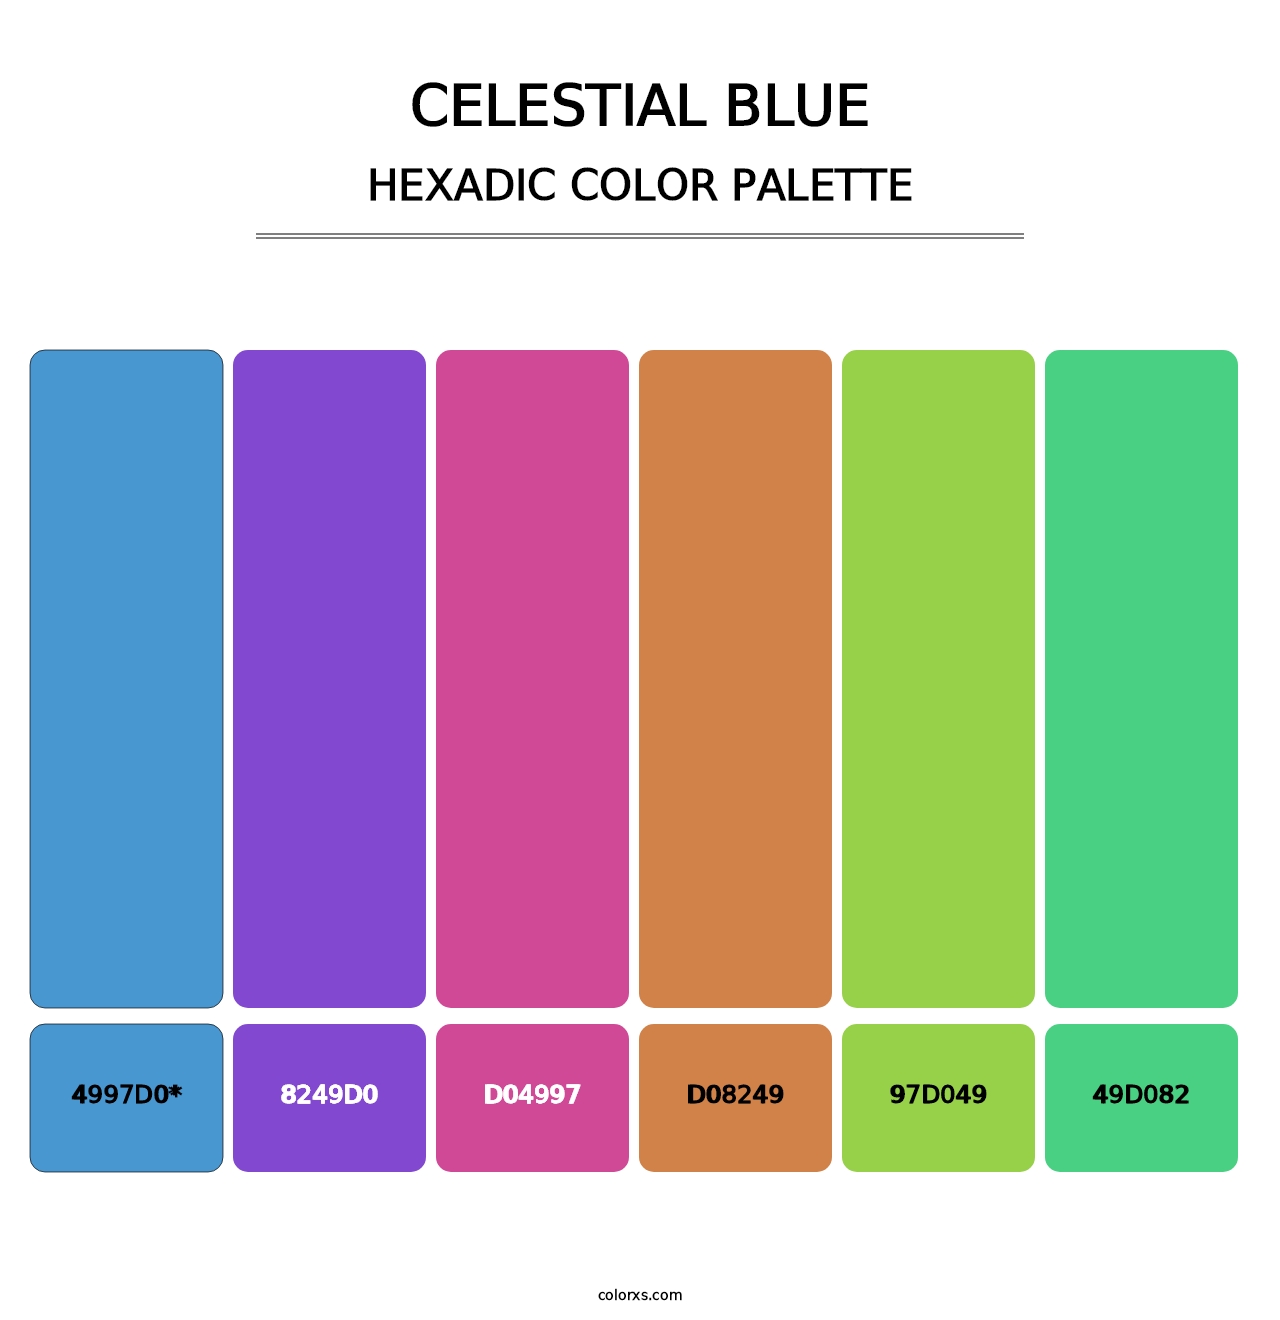 Celestial Blue - Hexadic Color Palette